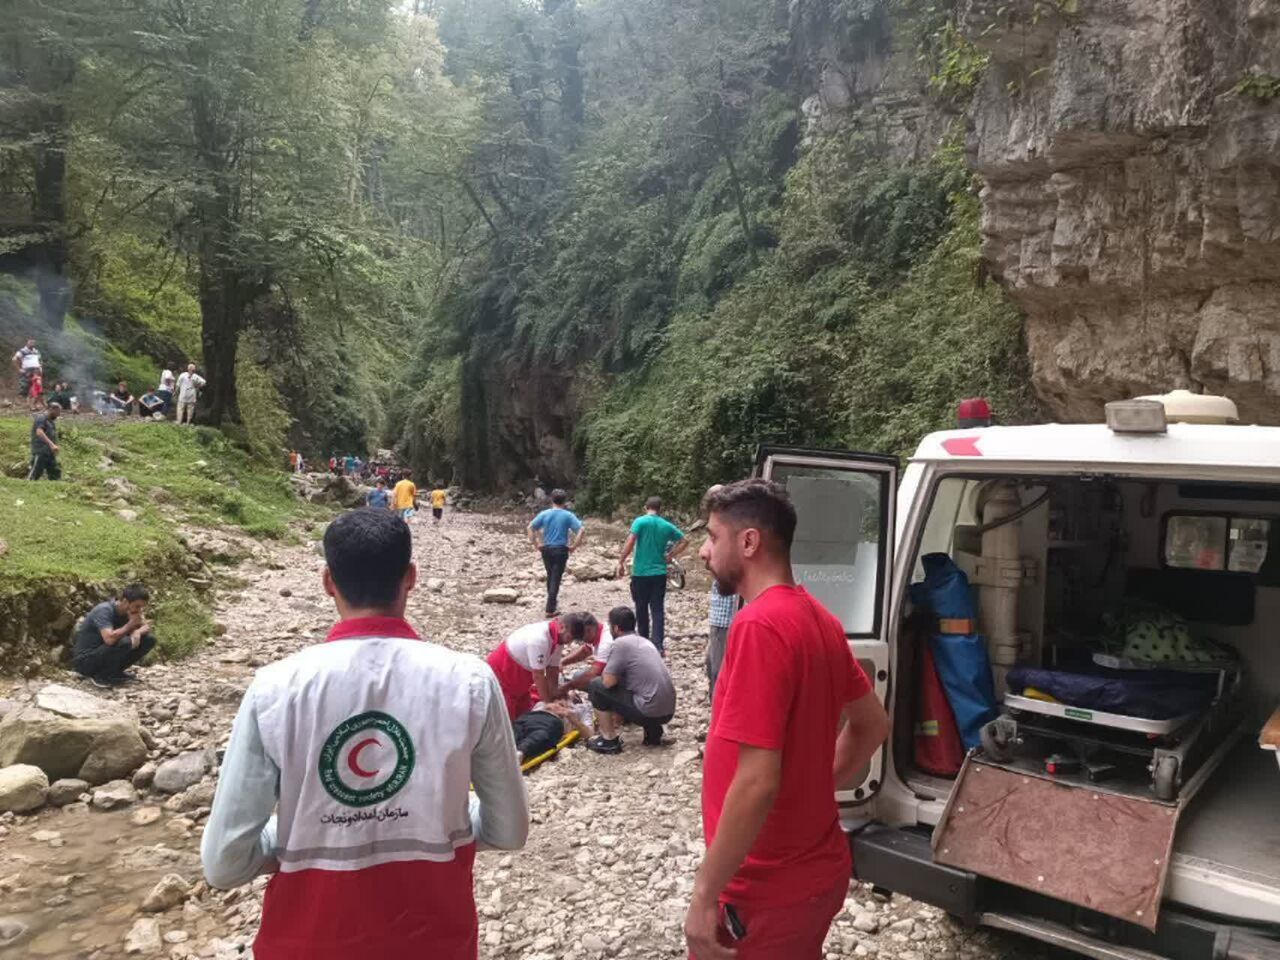 پدر و دختر اراکی در آبشار عباس آباد مازندران غرق شدند